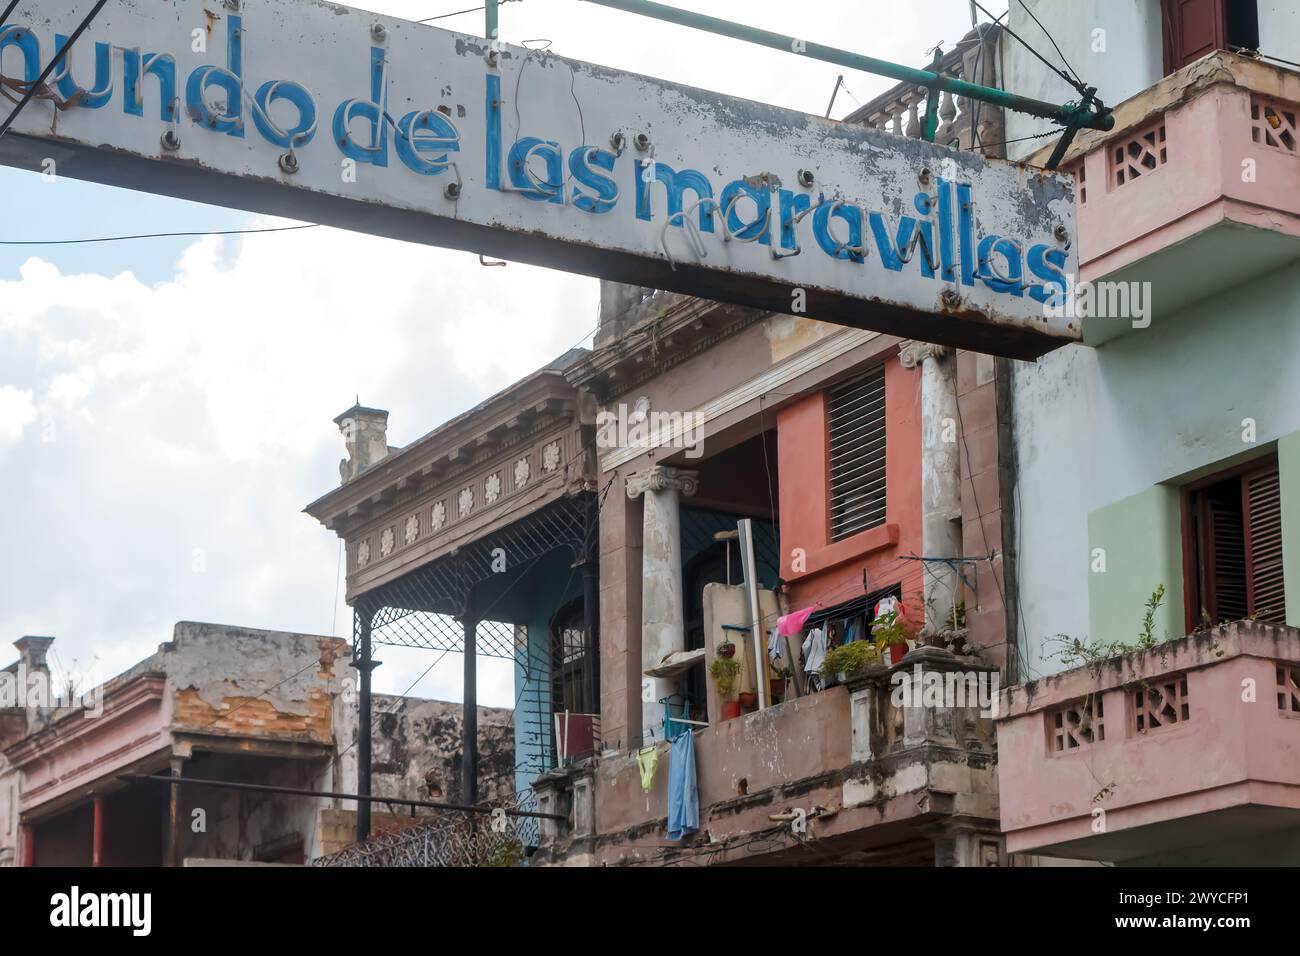 Sign Mundo de Maravillas, weathered building facades in Havana, Cuba Stock Photo